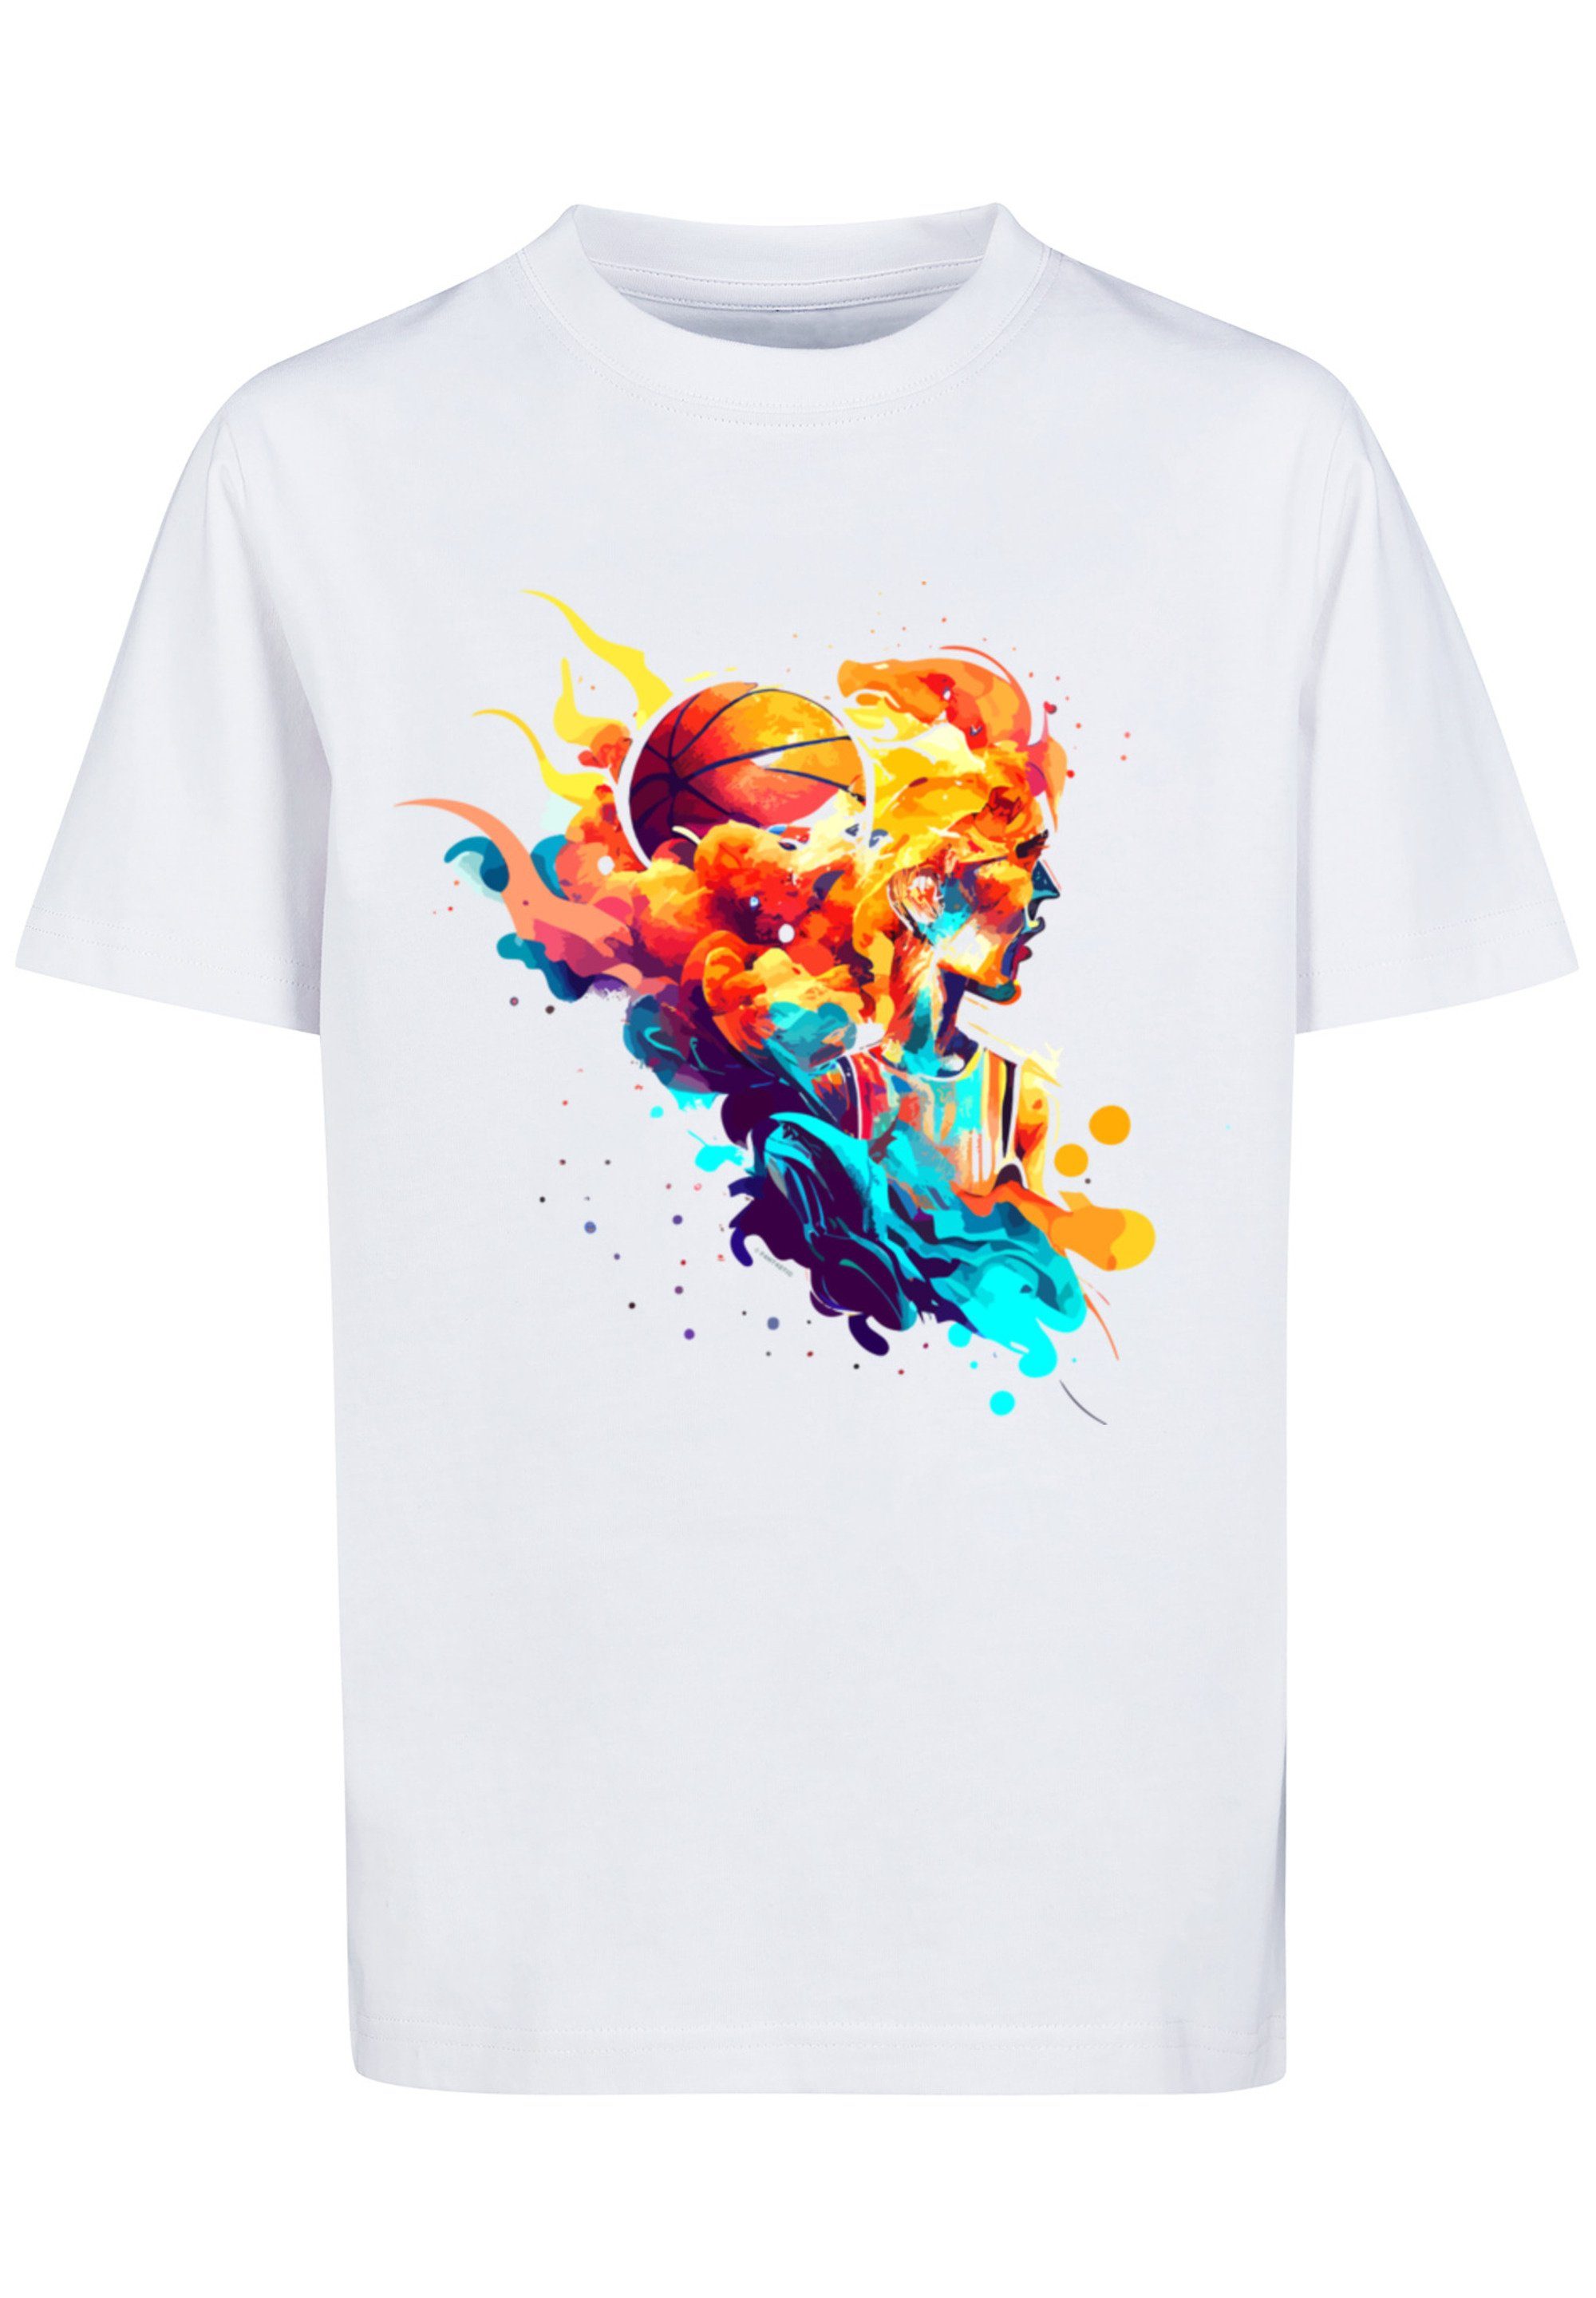 Tragekomfort Print, UNISEX T-Shirt hohem Sehr Basketball Sport Baumwollstoff weicher Player F4NT4STIC mit